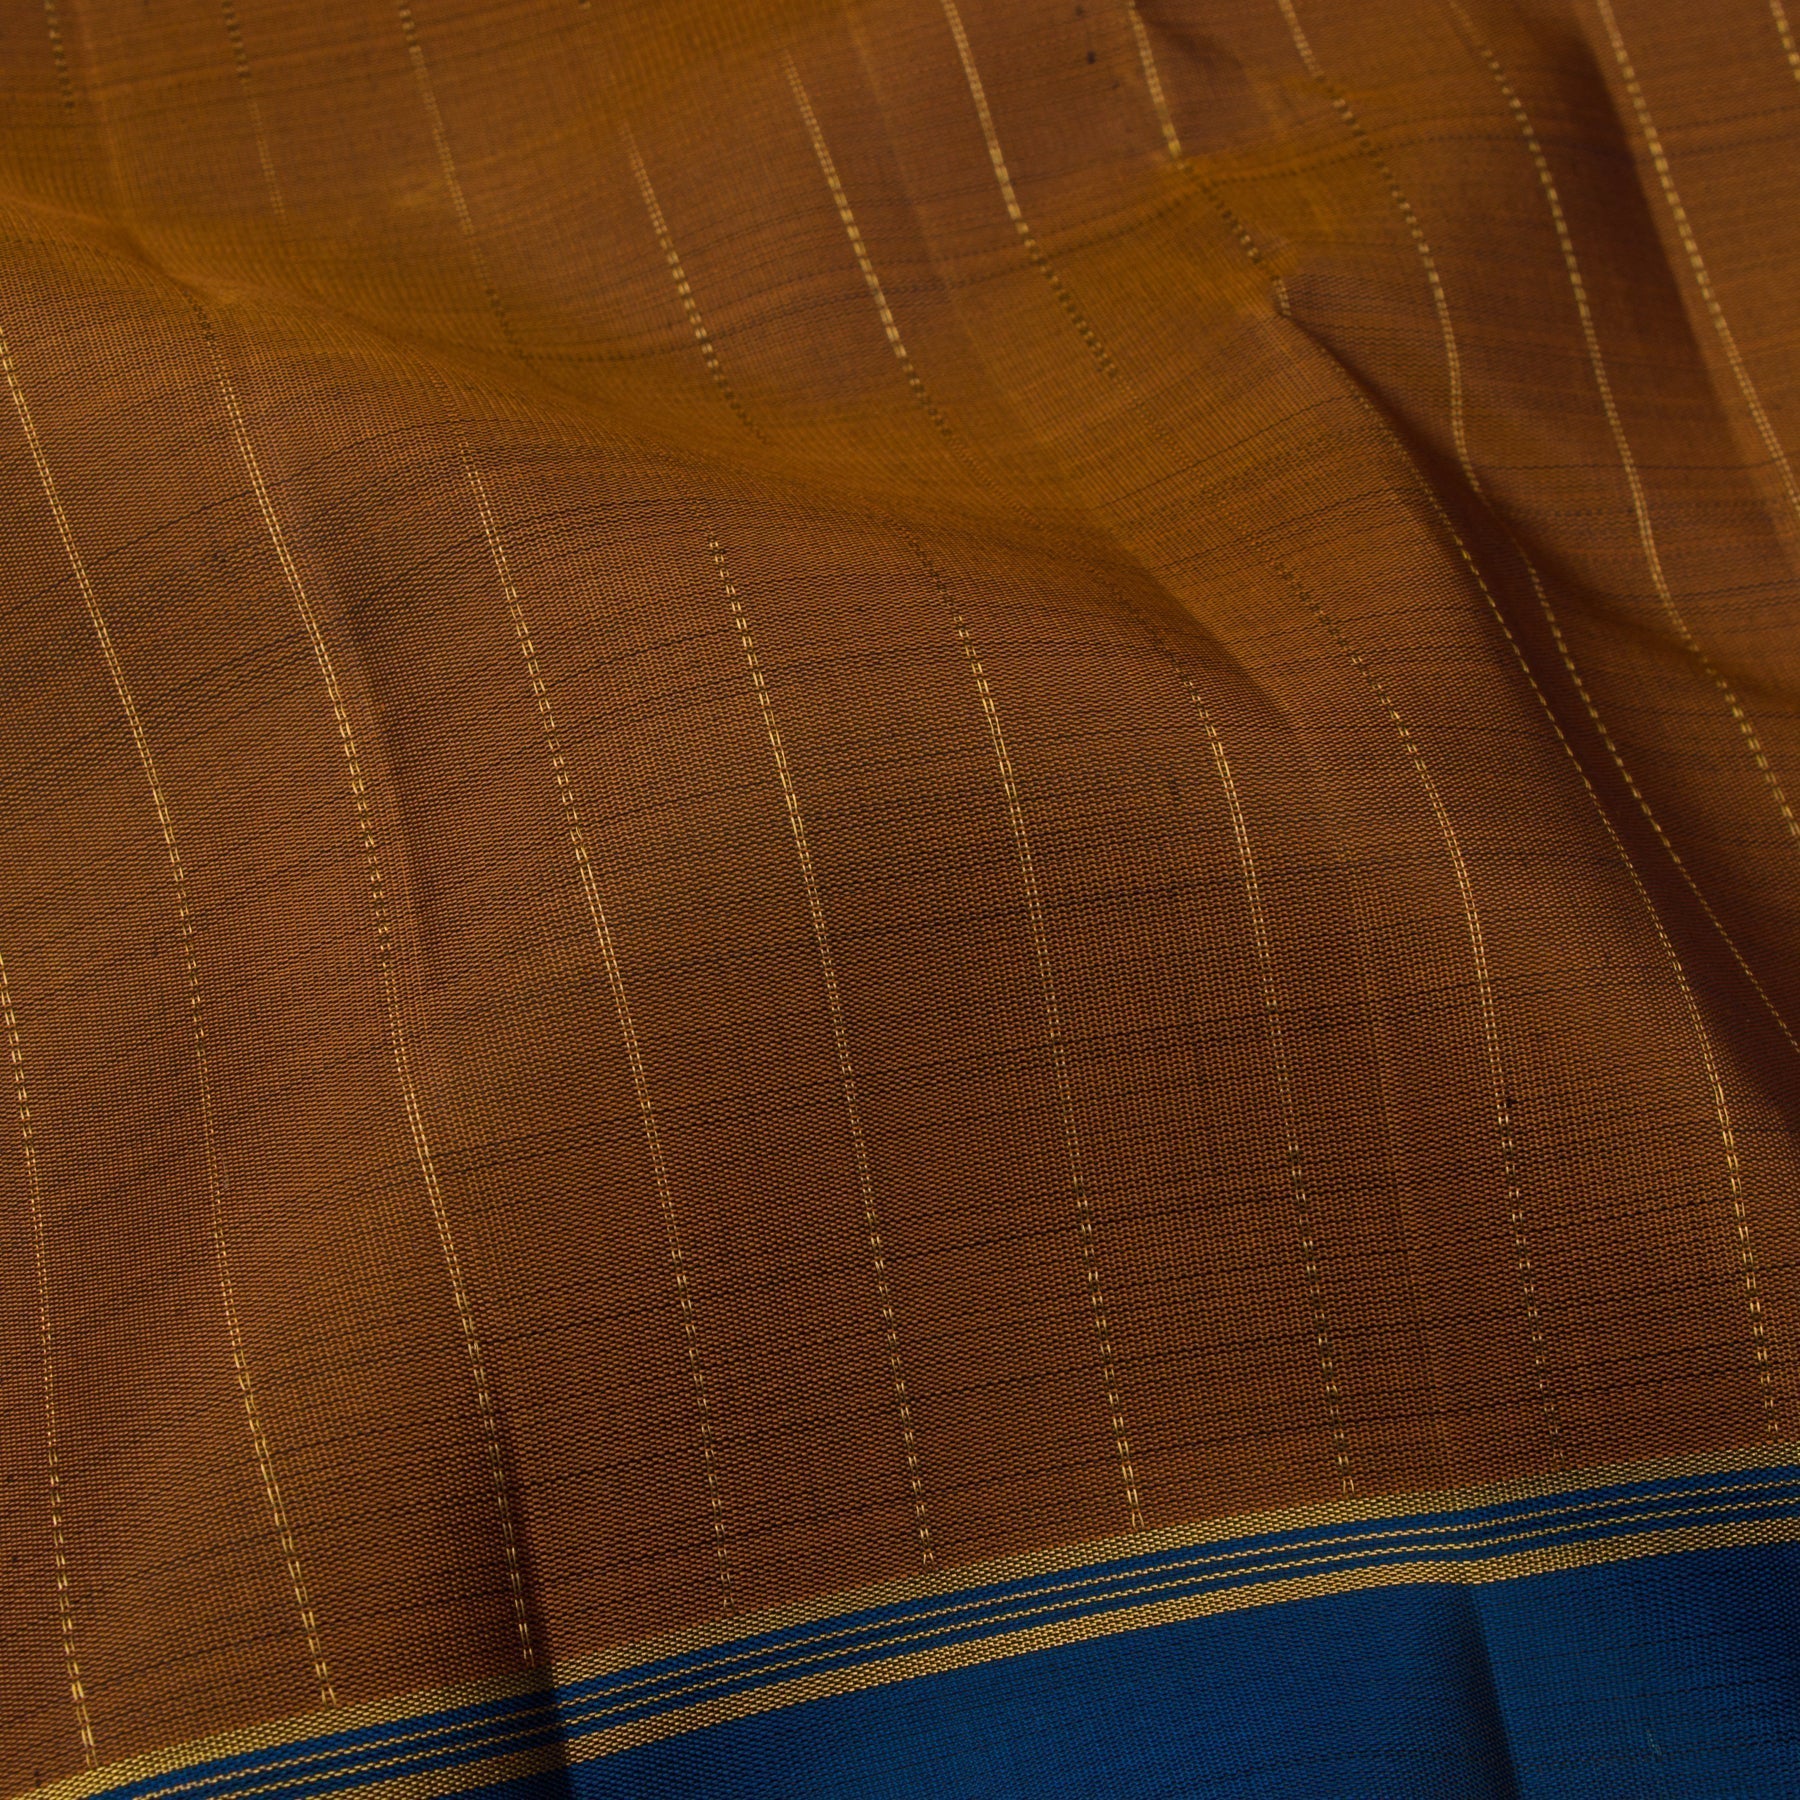 Kanakavalli Kanjivaram Silk Sari 22-595-HS001-14628 - Fabric View